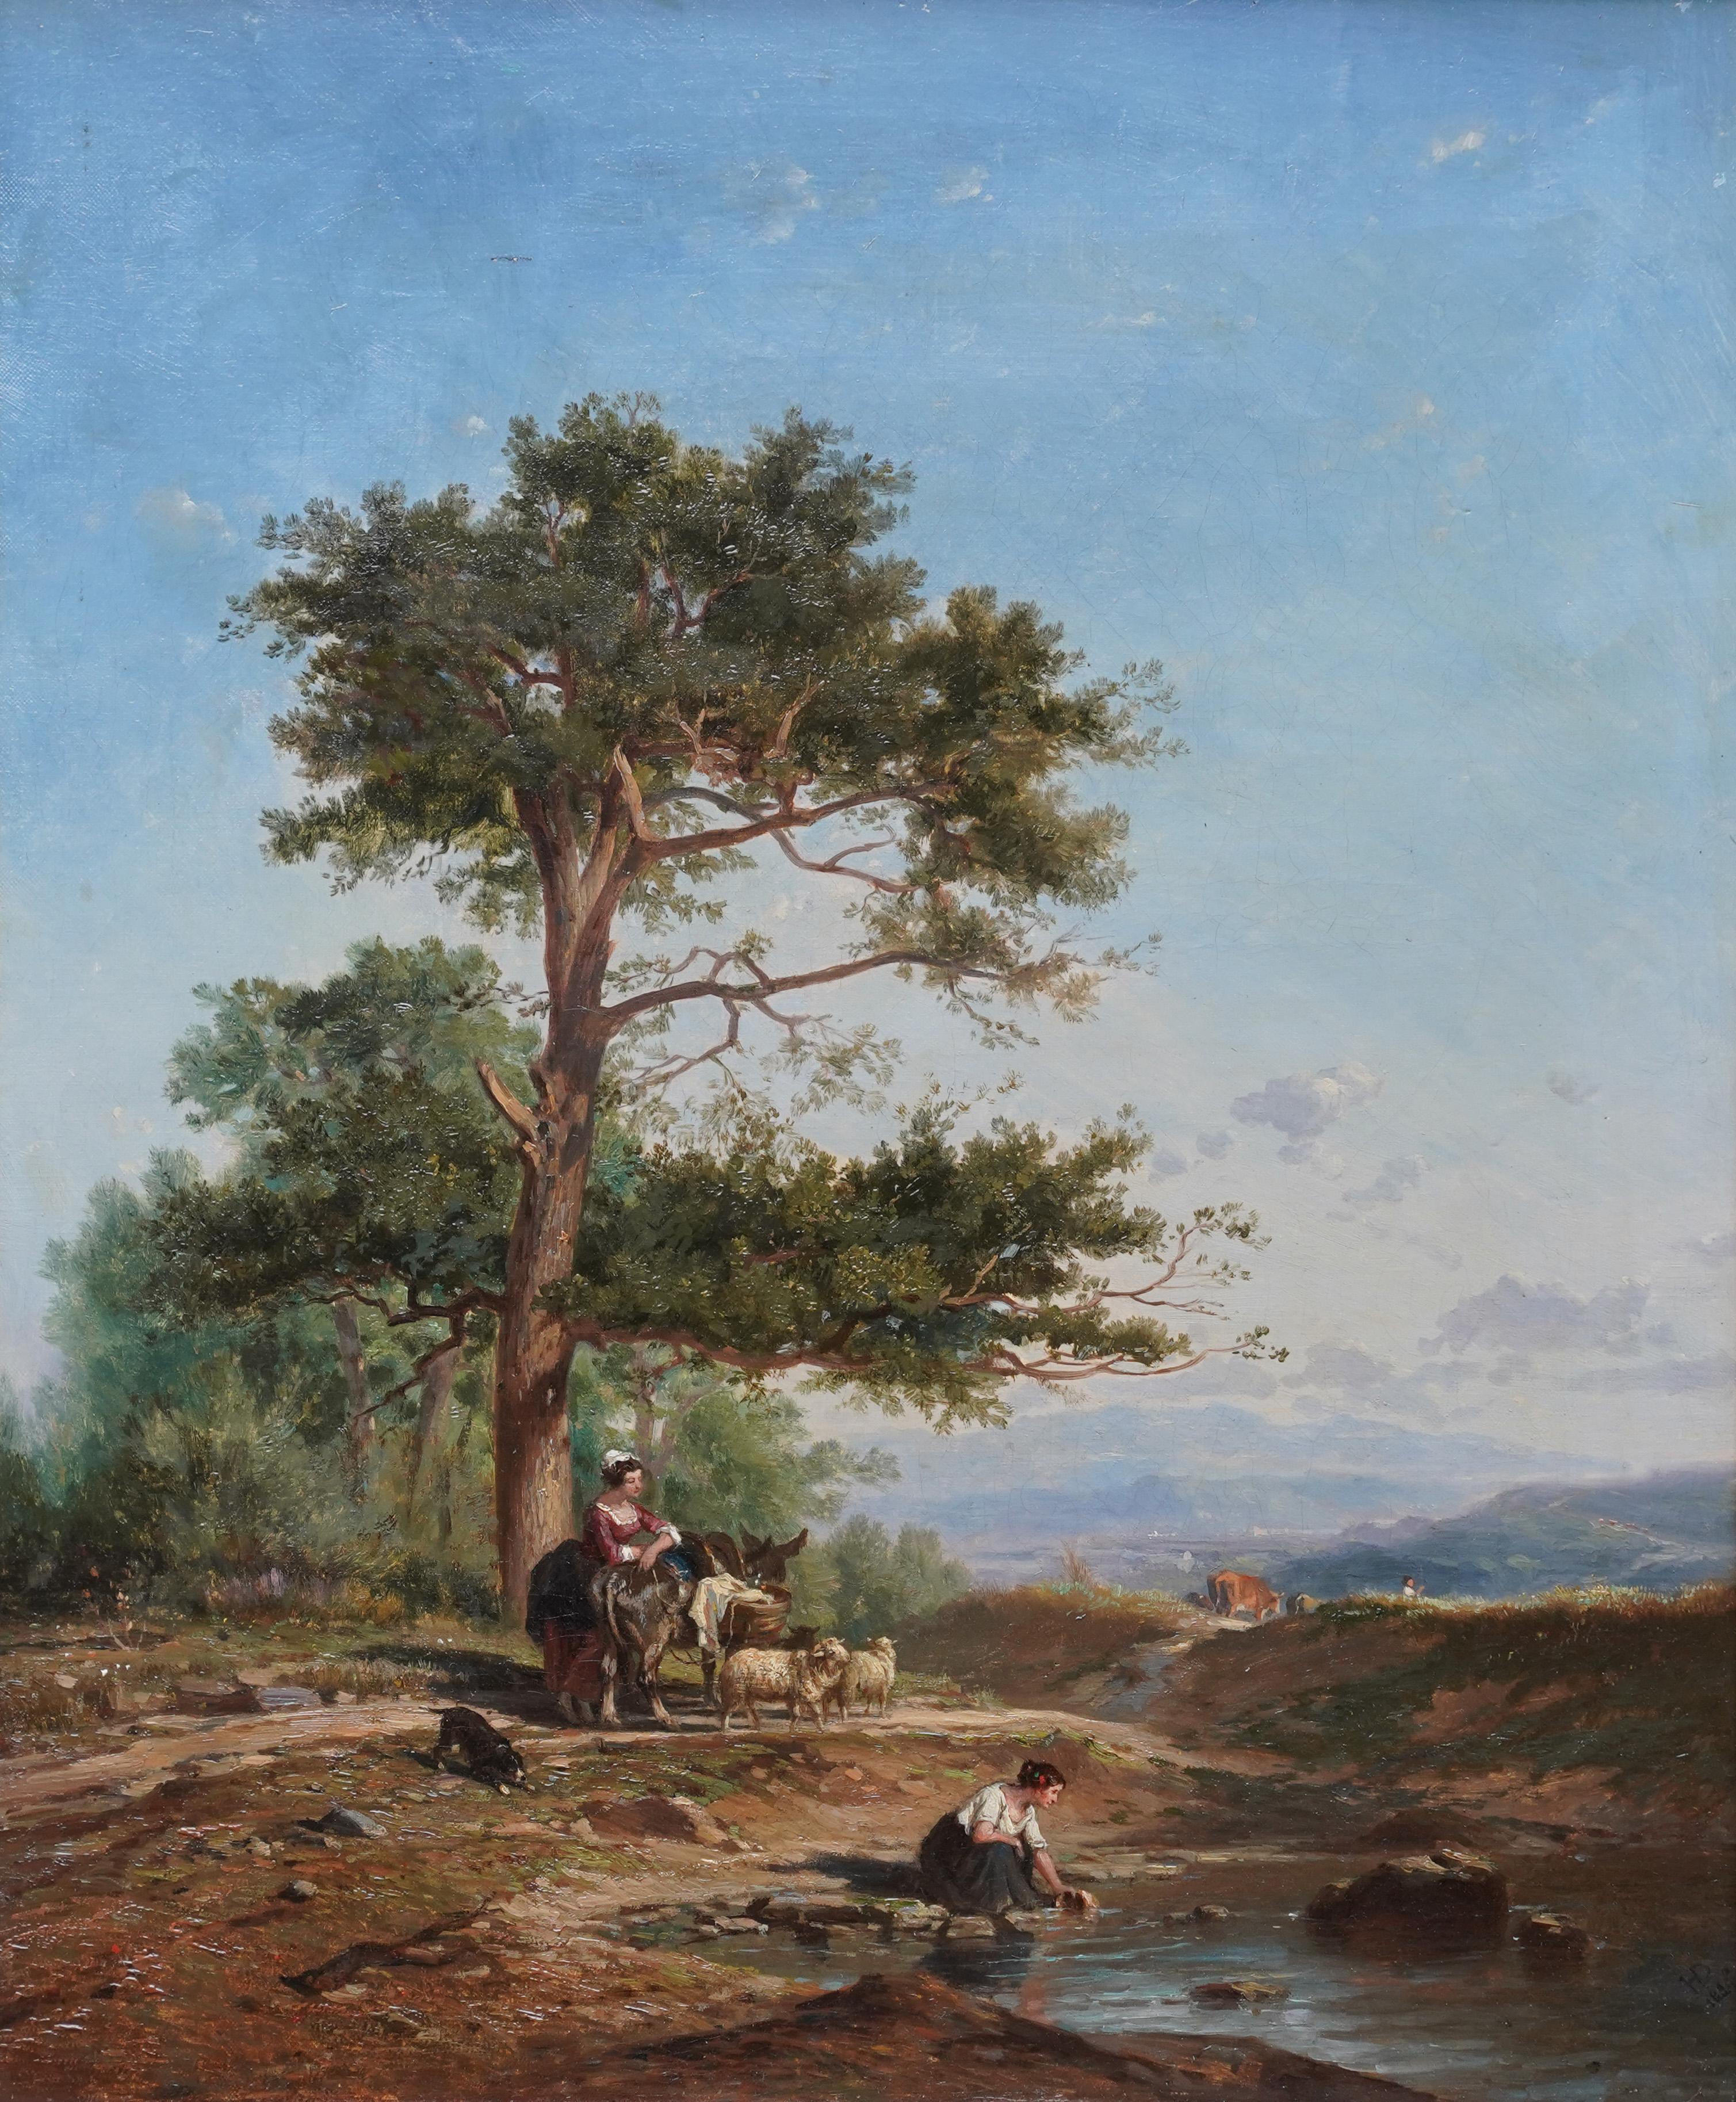 Les femmes dans un paysage - Peinture à l'huile figurative d'art victorien britannique - Painting de Henry Dawson